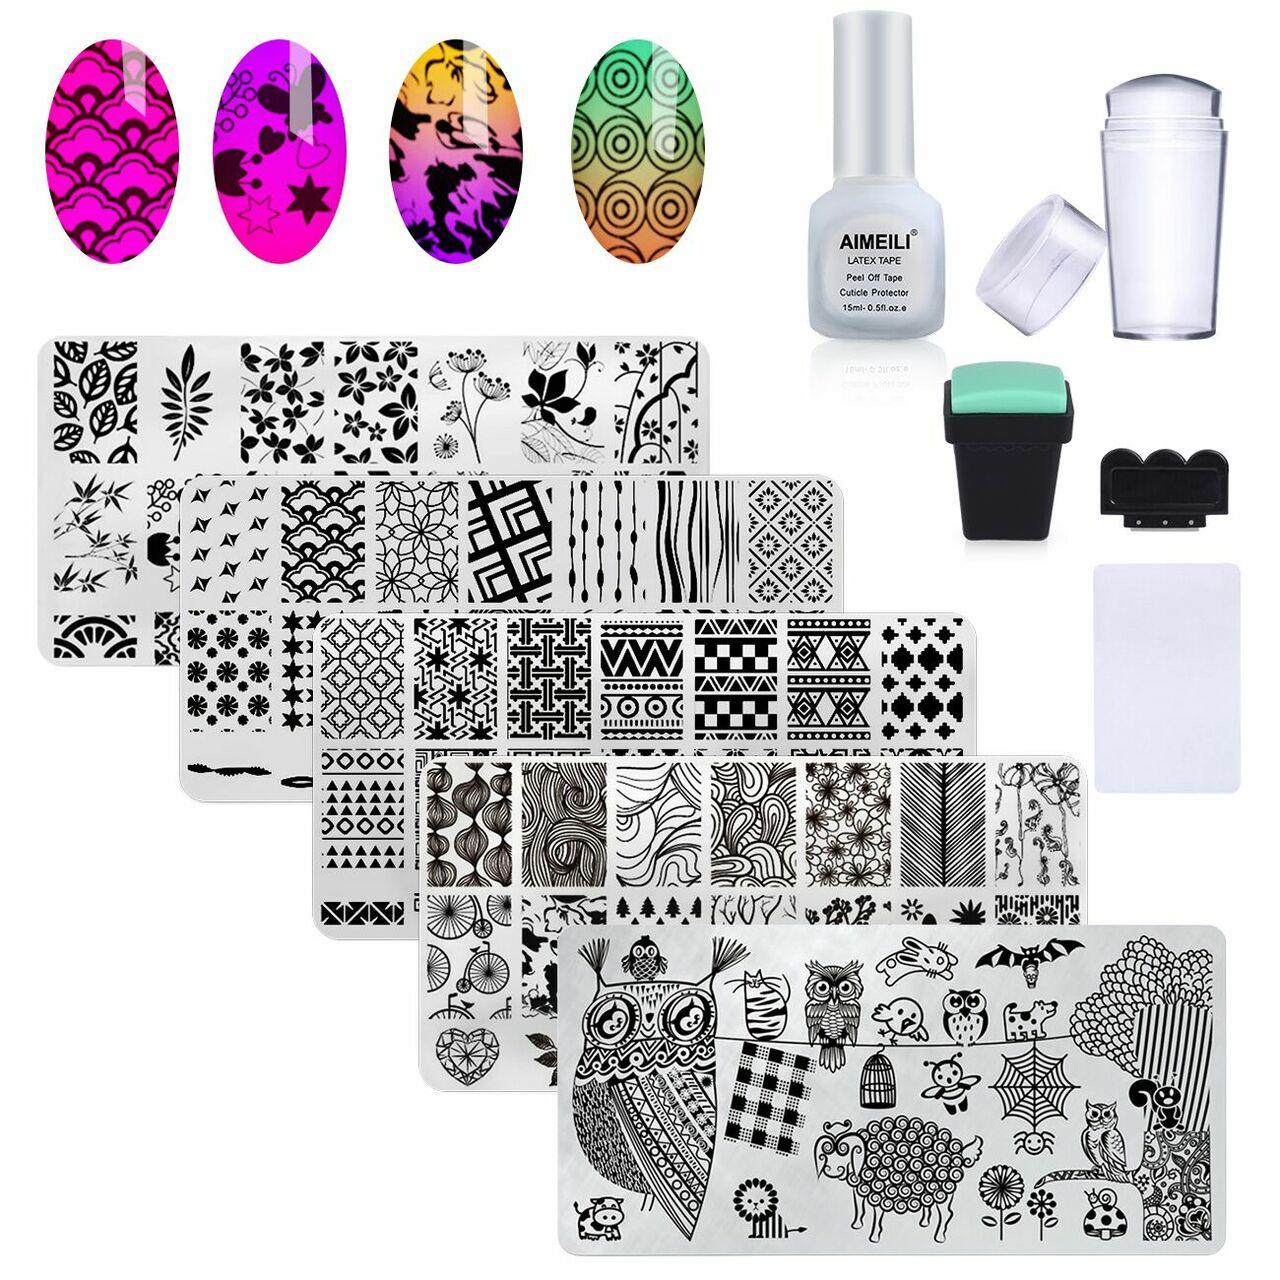 AIMEILI Manicure Tool Kit